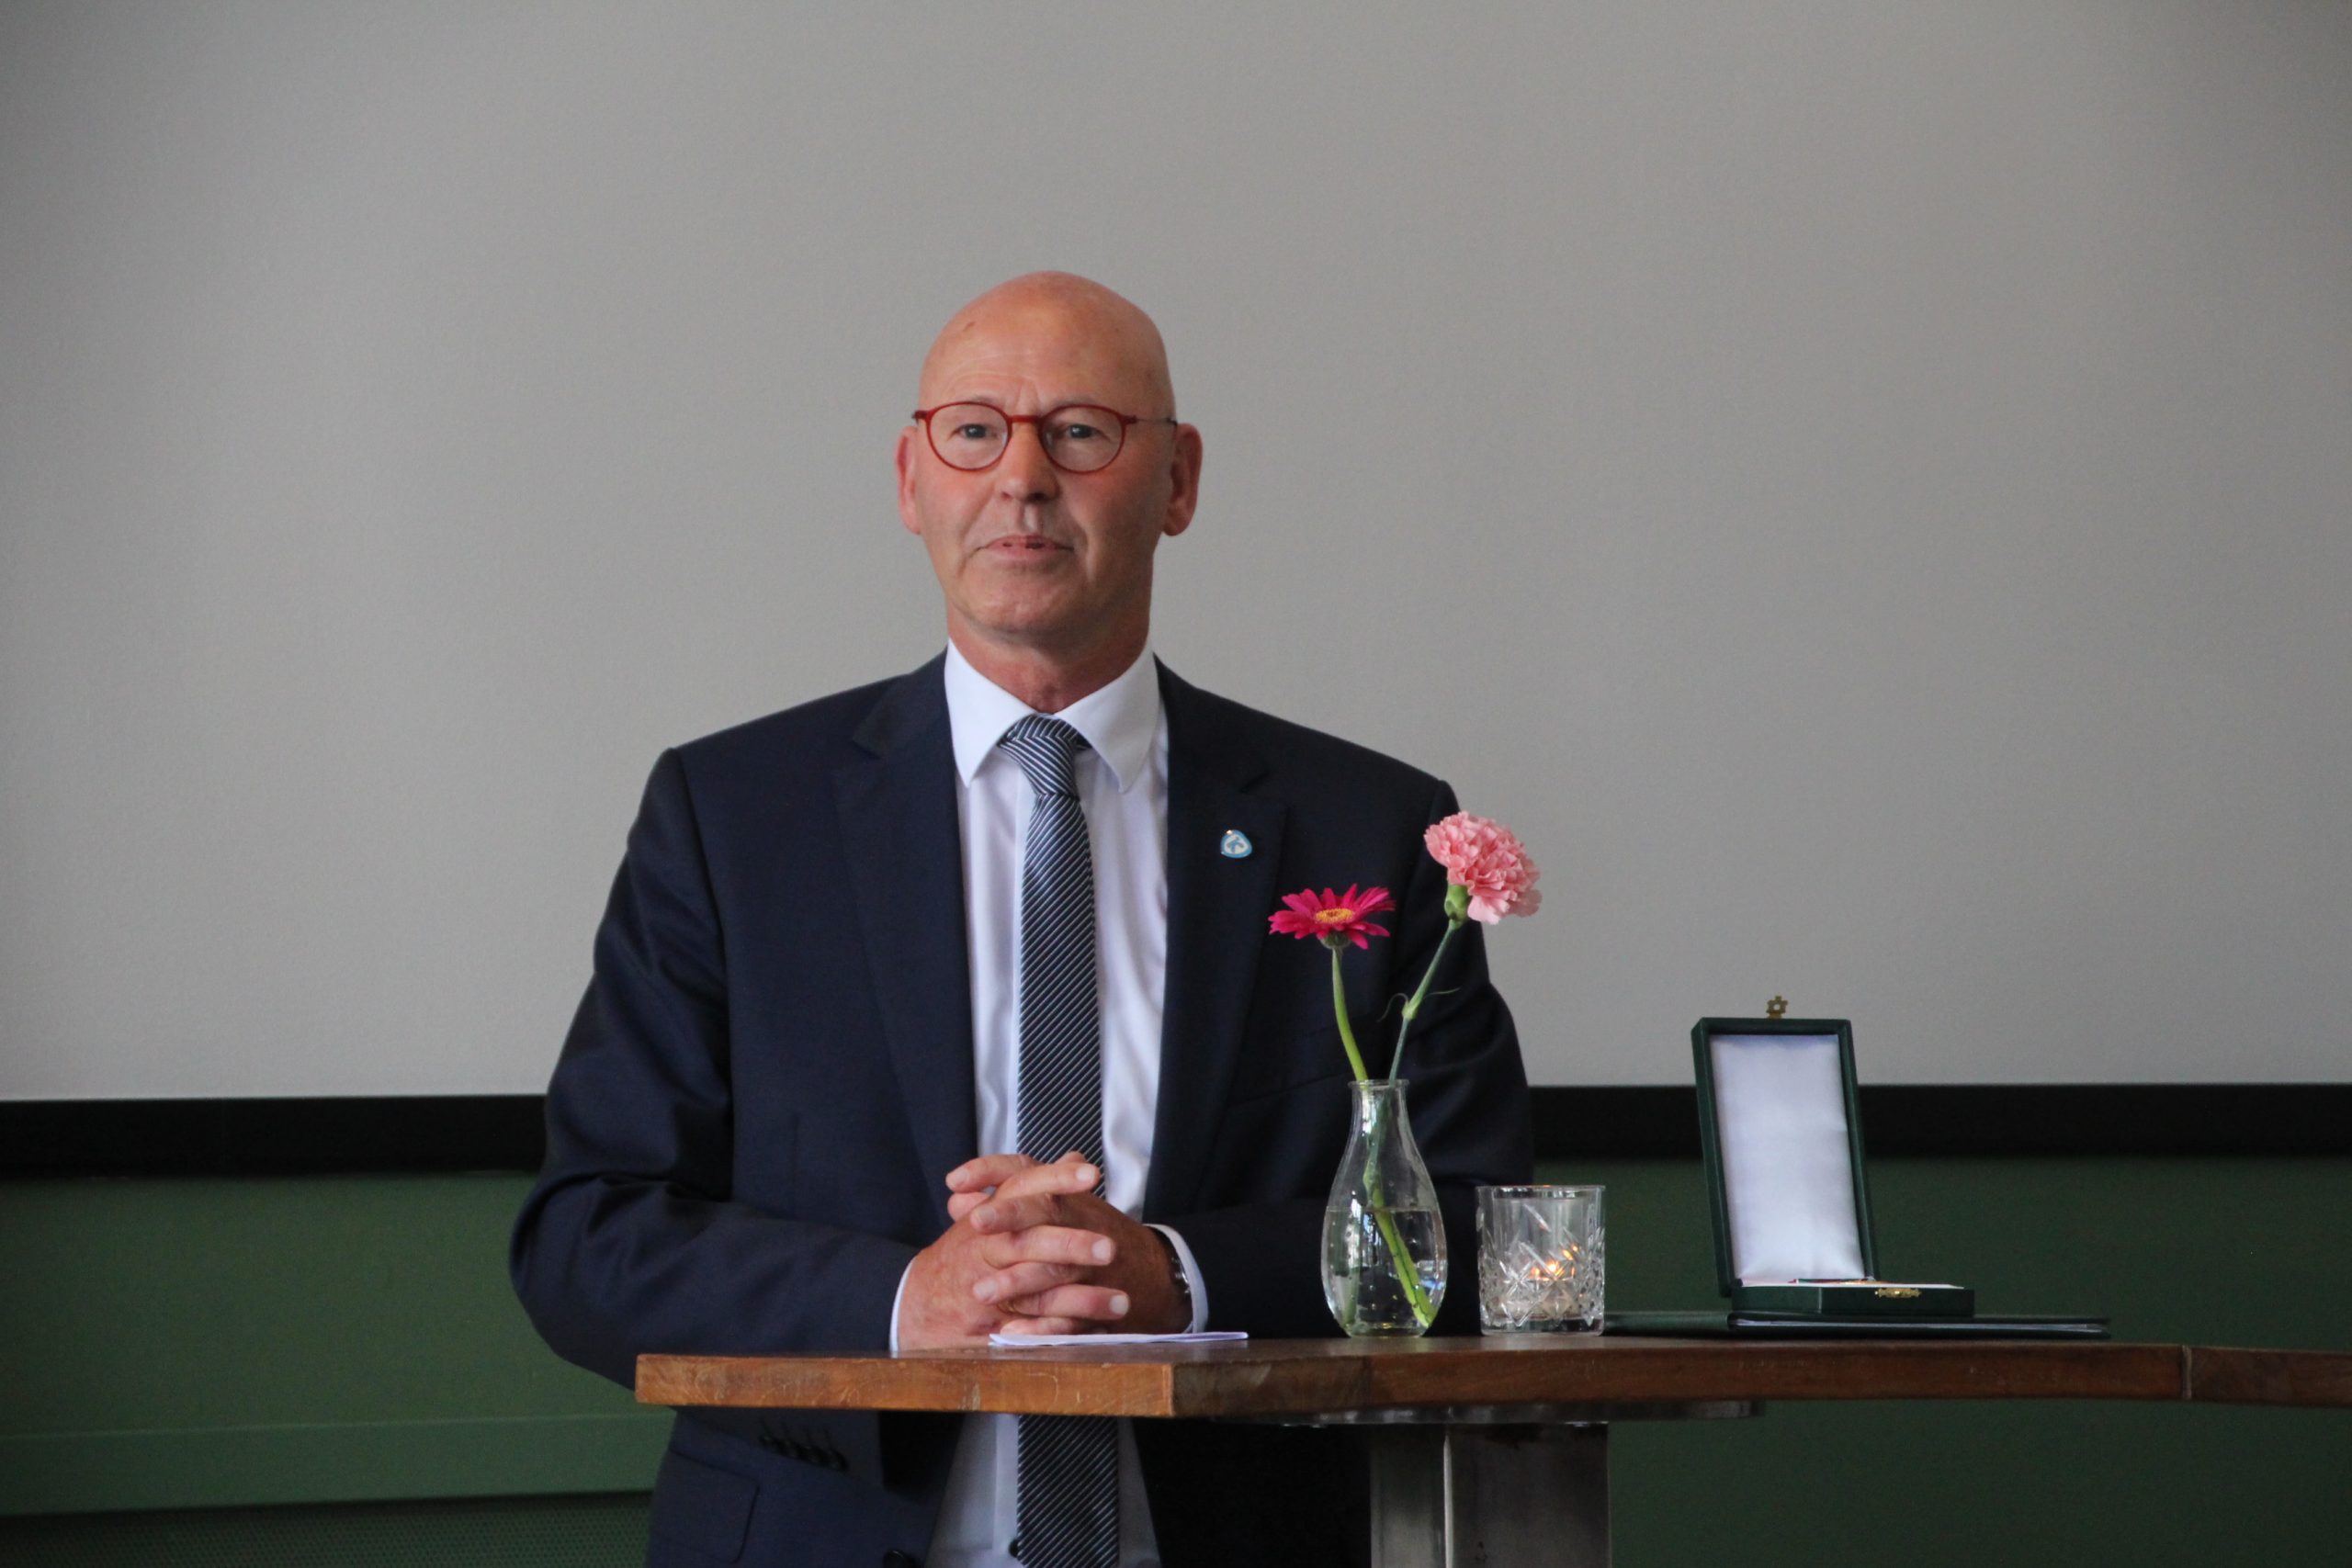 Burgemeester Koelewijn stopt per 1 oktober 2021